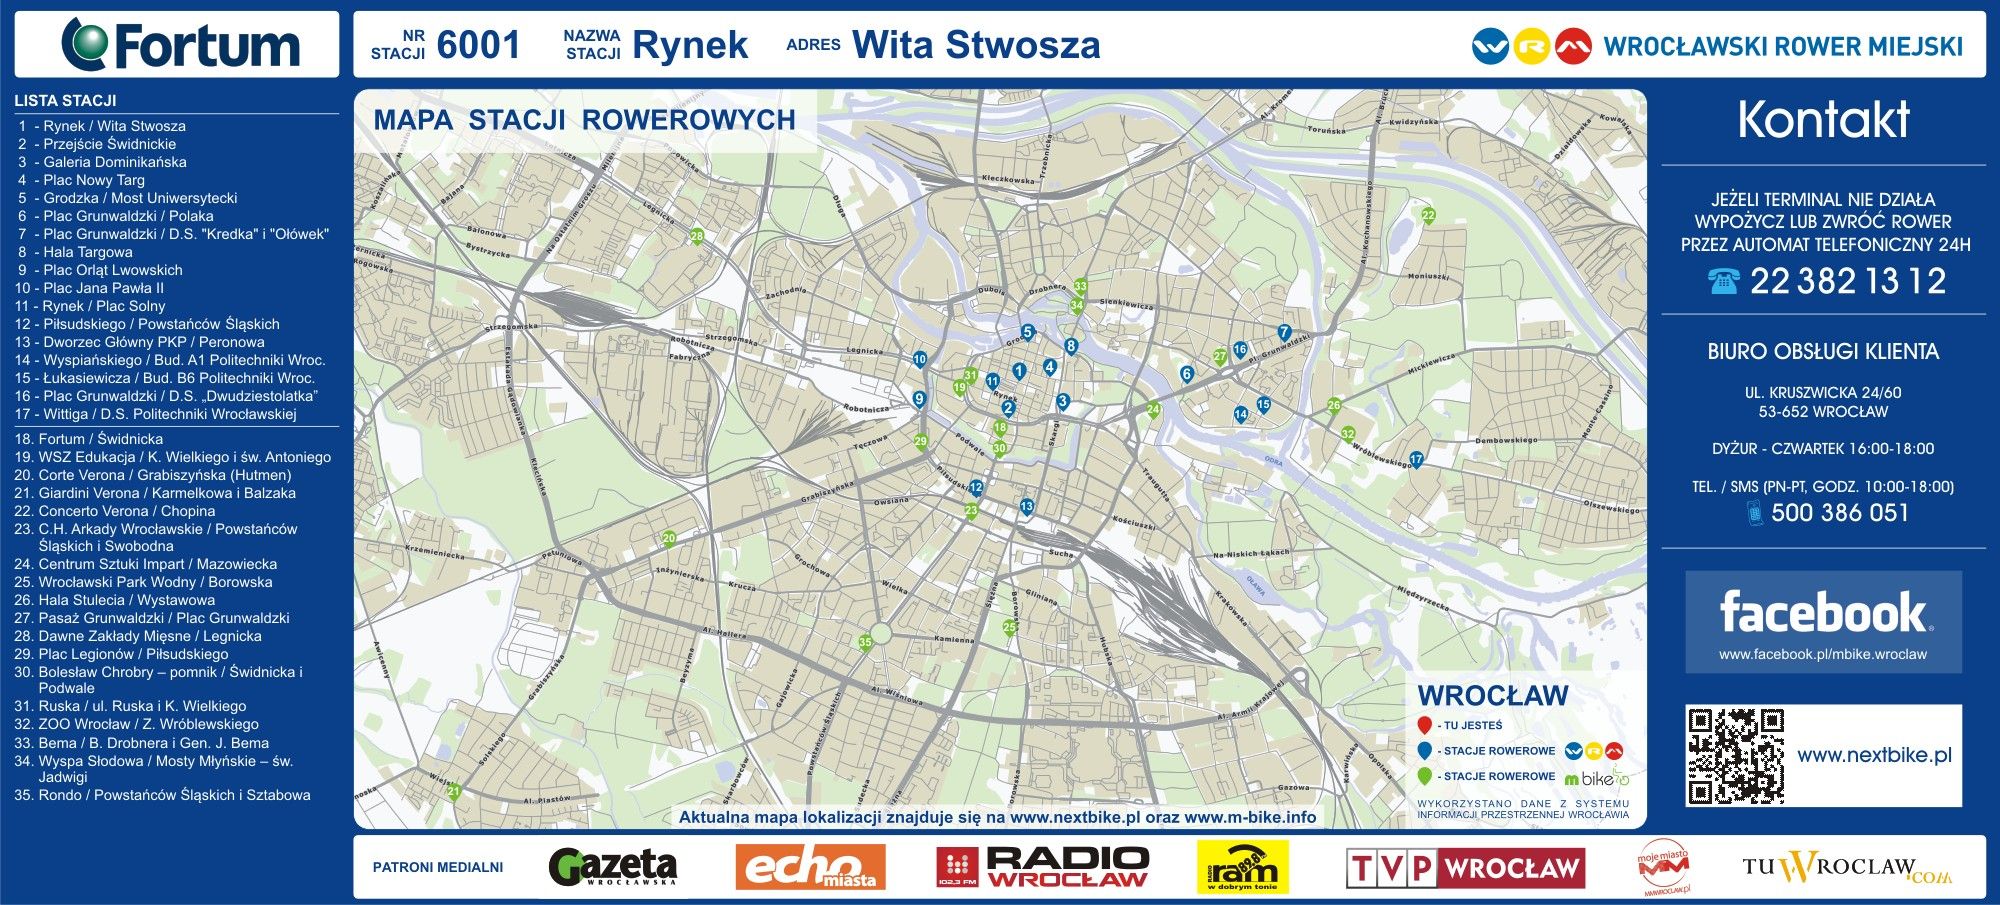 Wrocławski Rower Miejski: 100 tys. wypożyczeń w 4 miesiące, Nextbike